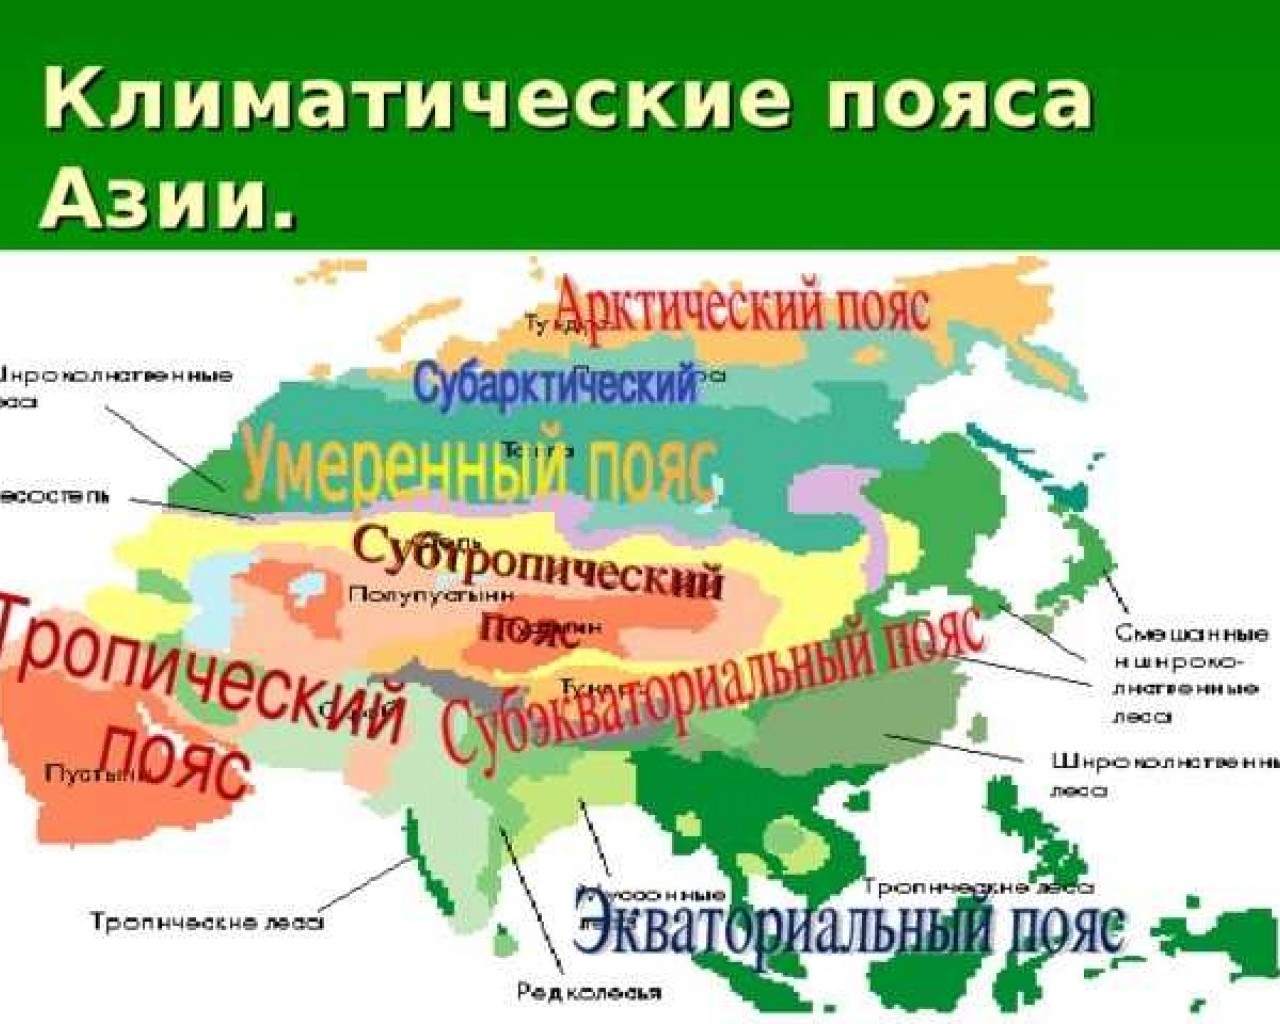 В каких районах евразии. Центральная Азия карта климатические пояса. Карта климат поясов Евразии. Климатические пояса Юго Восточной Азии. Карта климатических поясов Евразии.